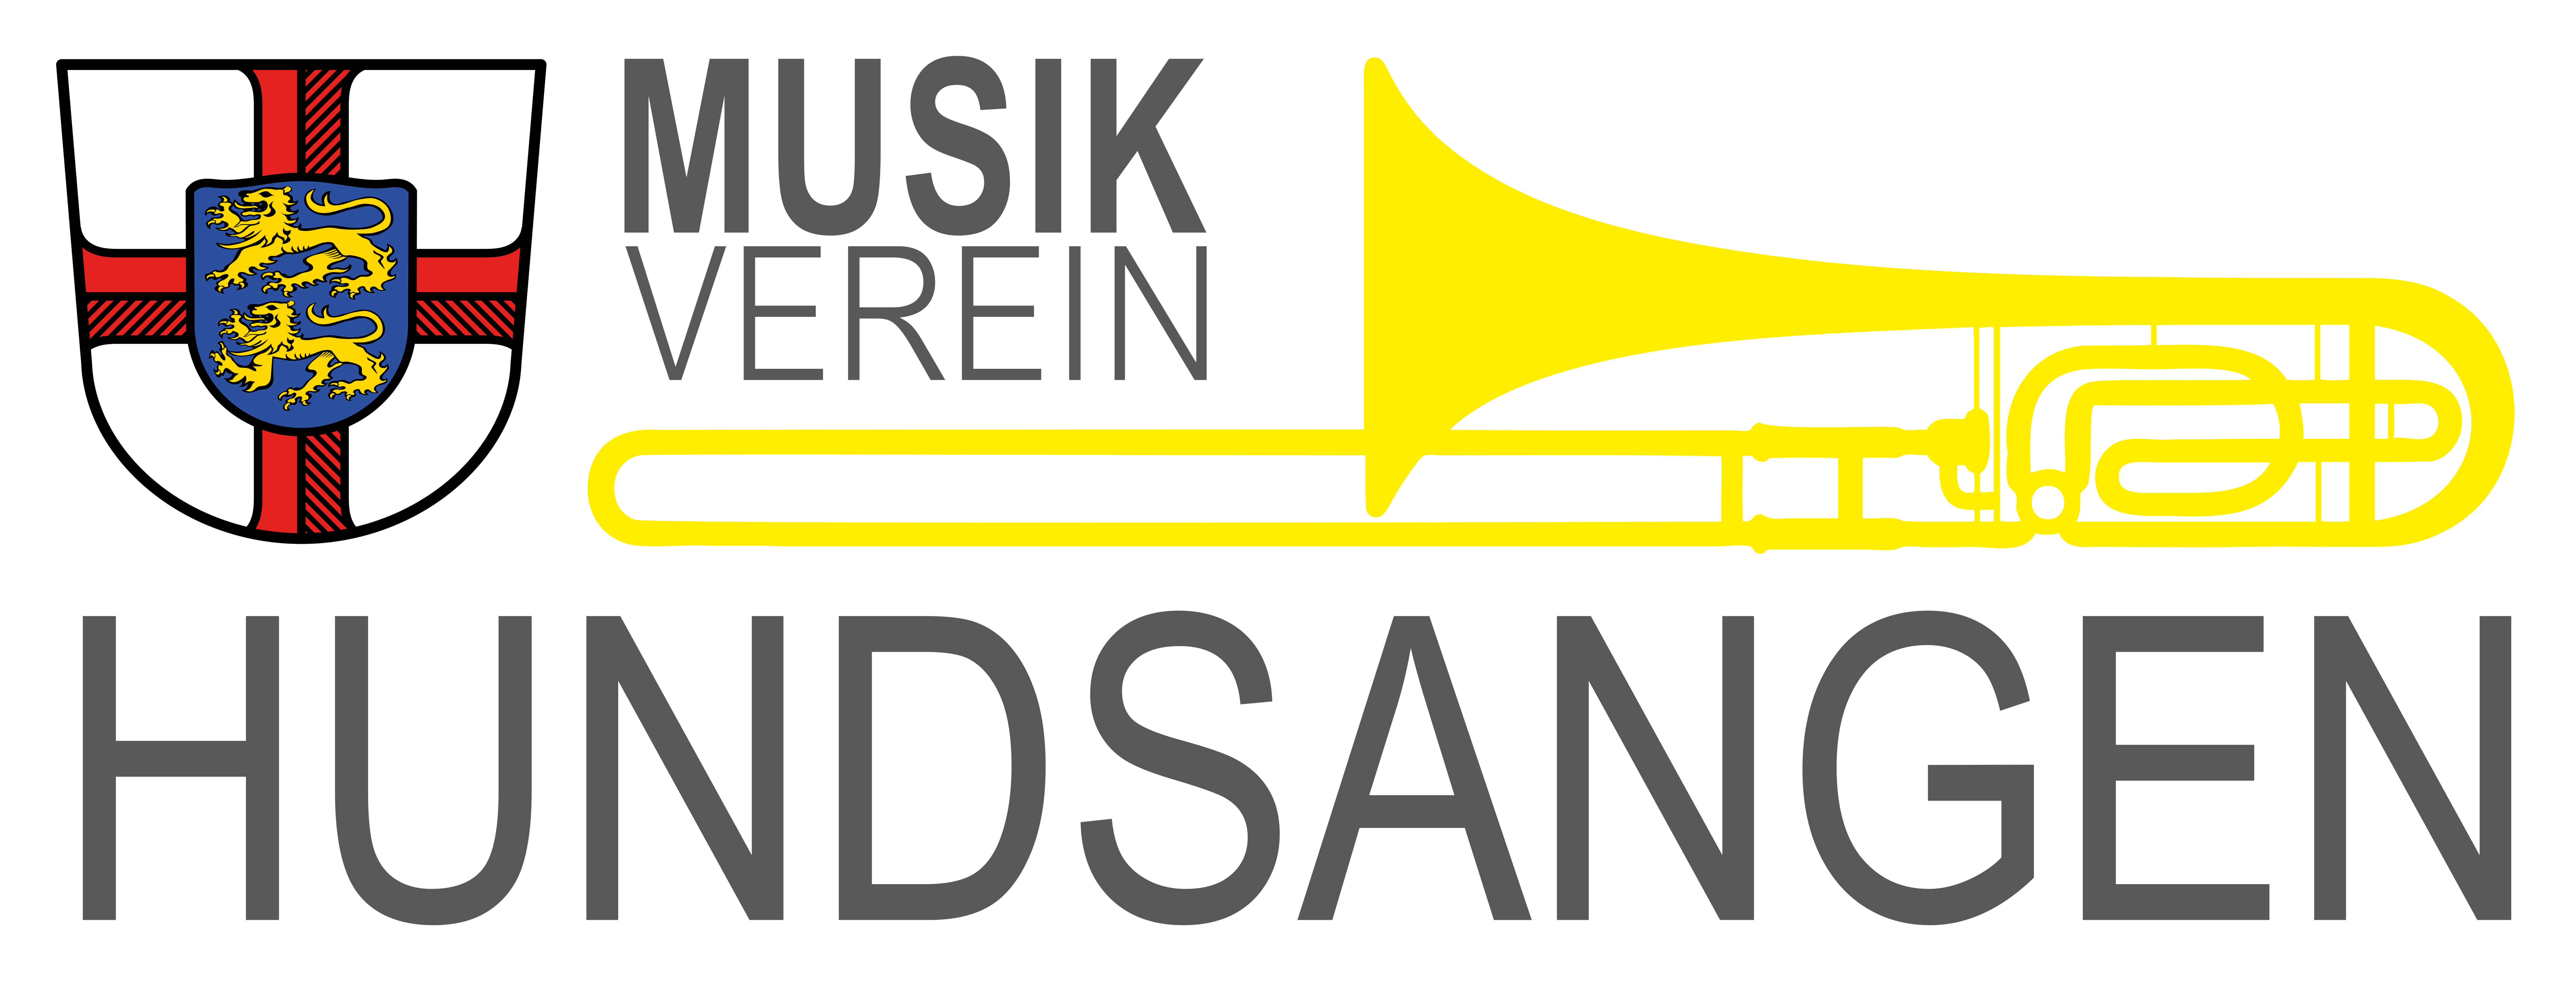 Musikverein Hundsangen e.V.